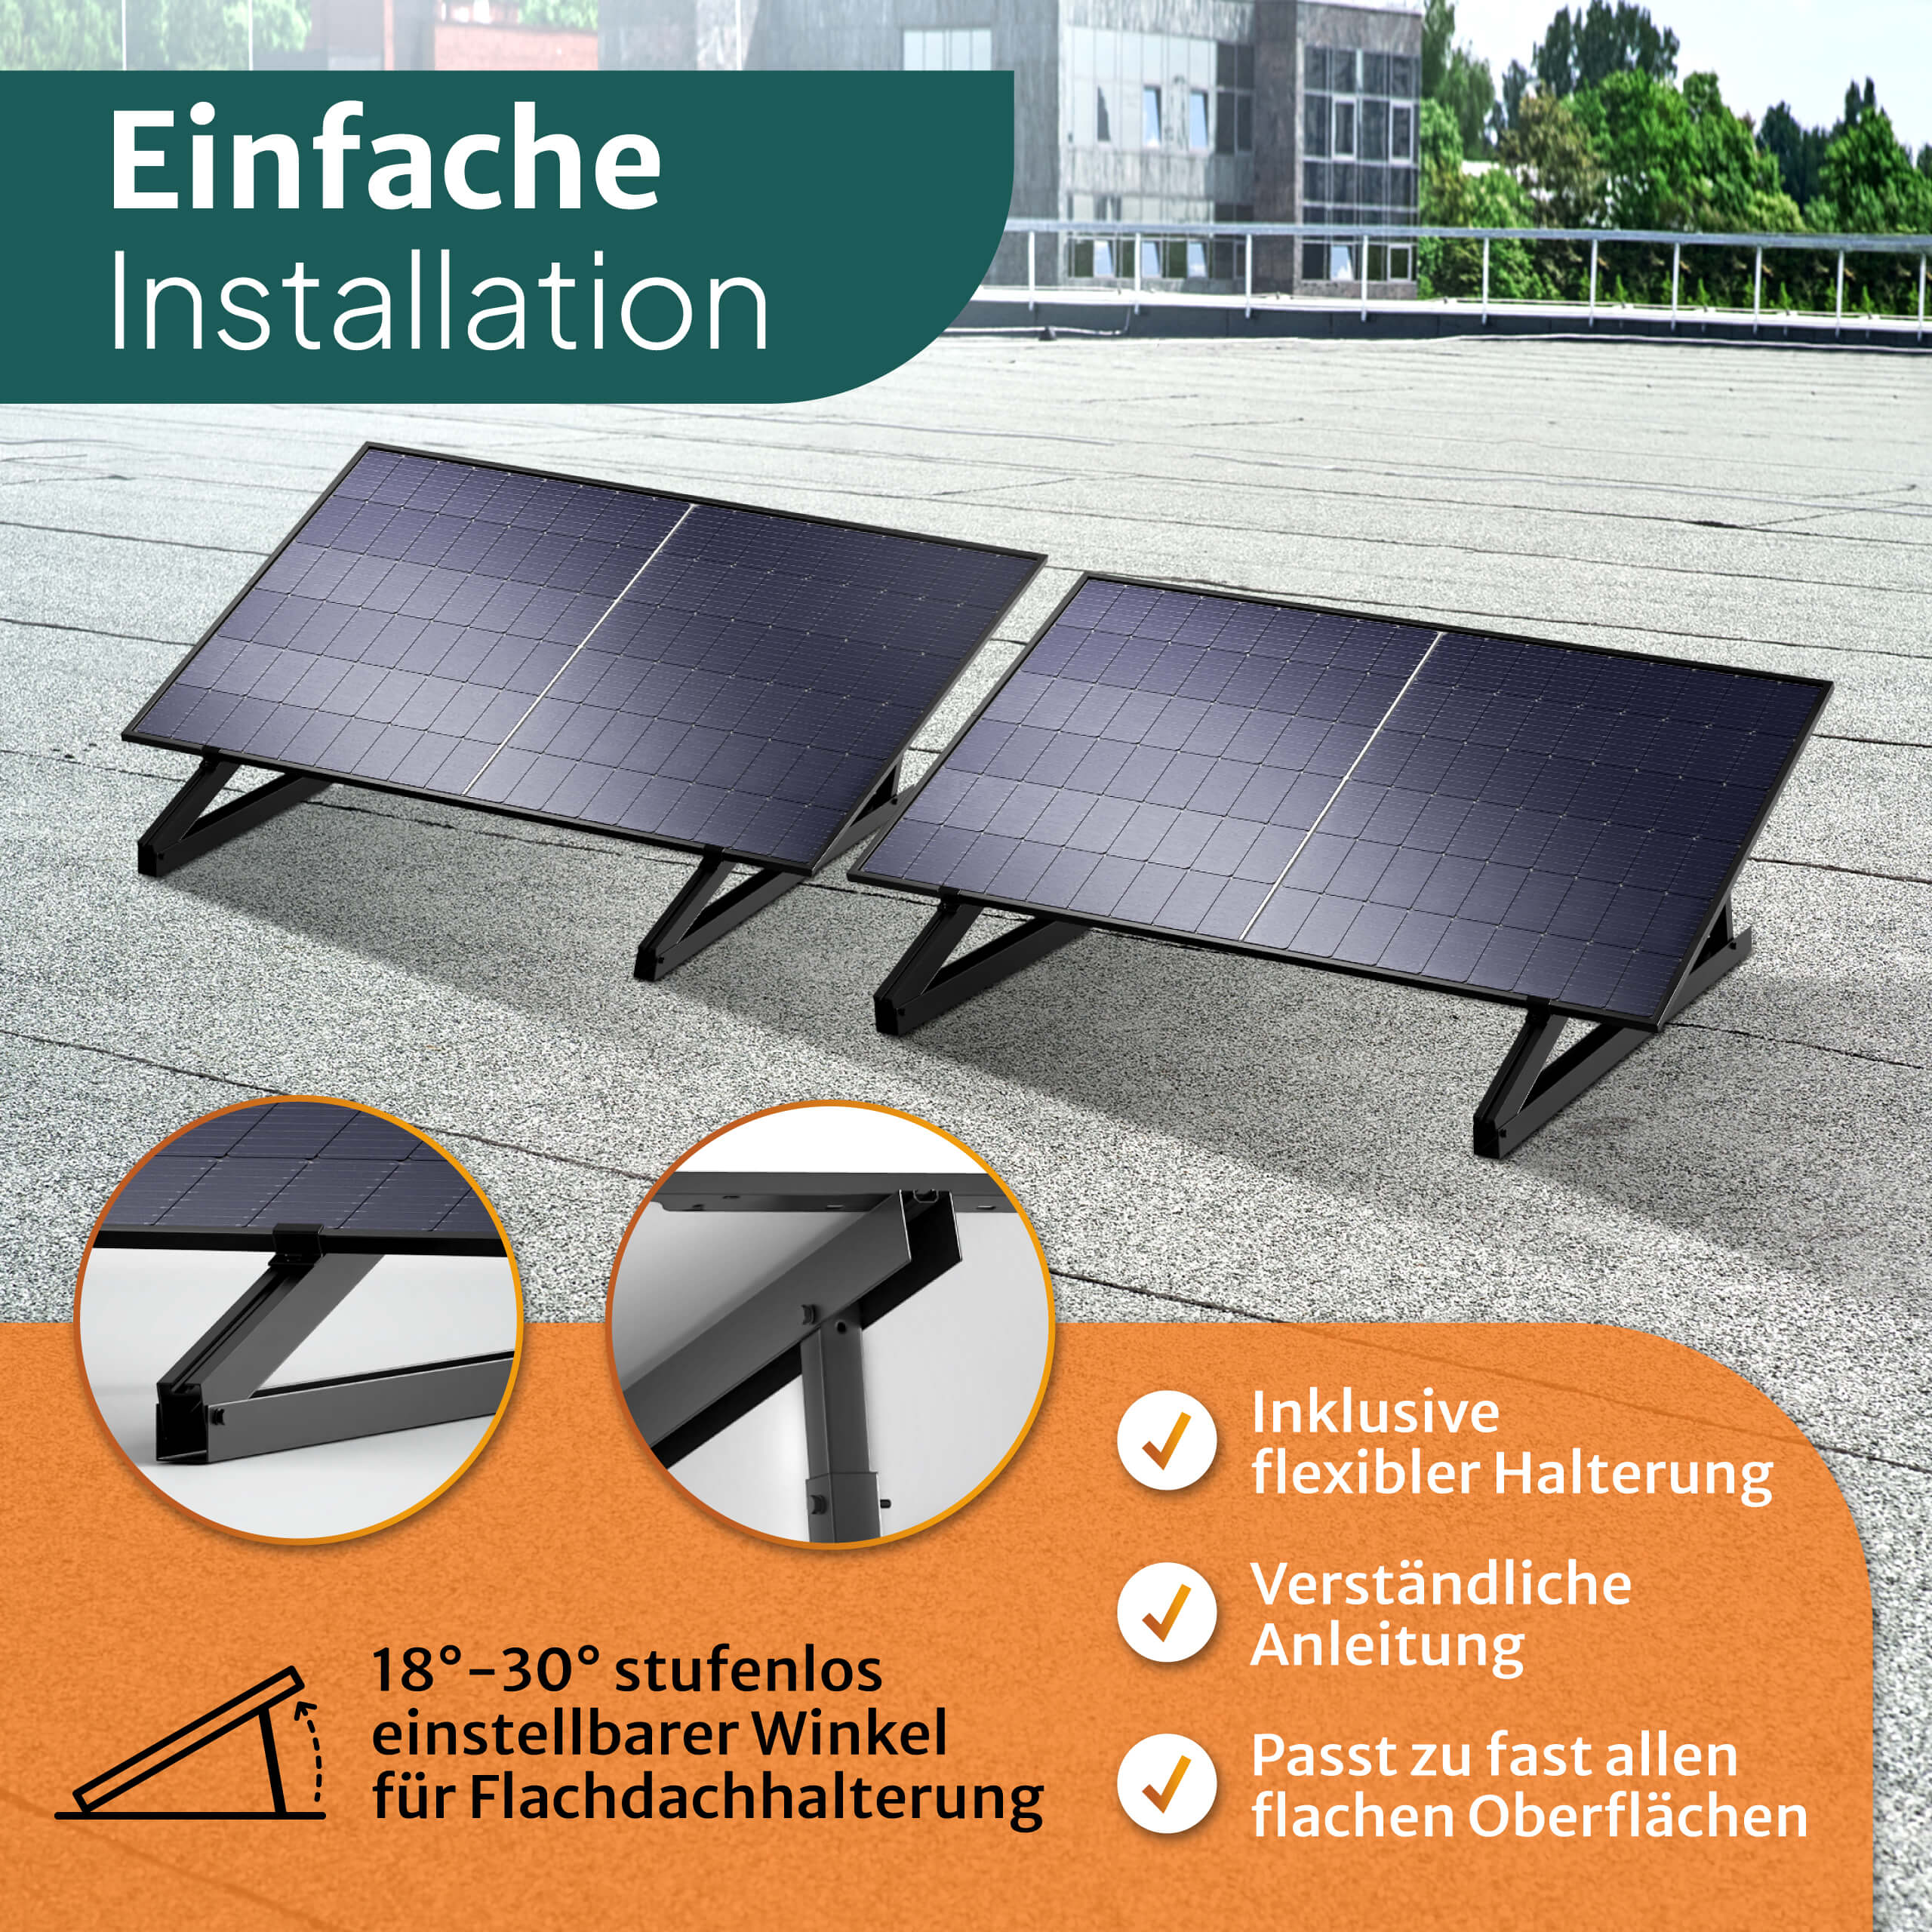 Speicher 850W Balkon-Solaranlage Flachdach-Halterung 1kWh - Batterie Kabel STROMGANZEINFACH 15m inkl. mit